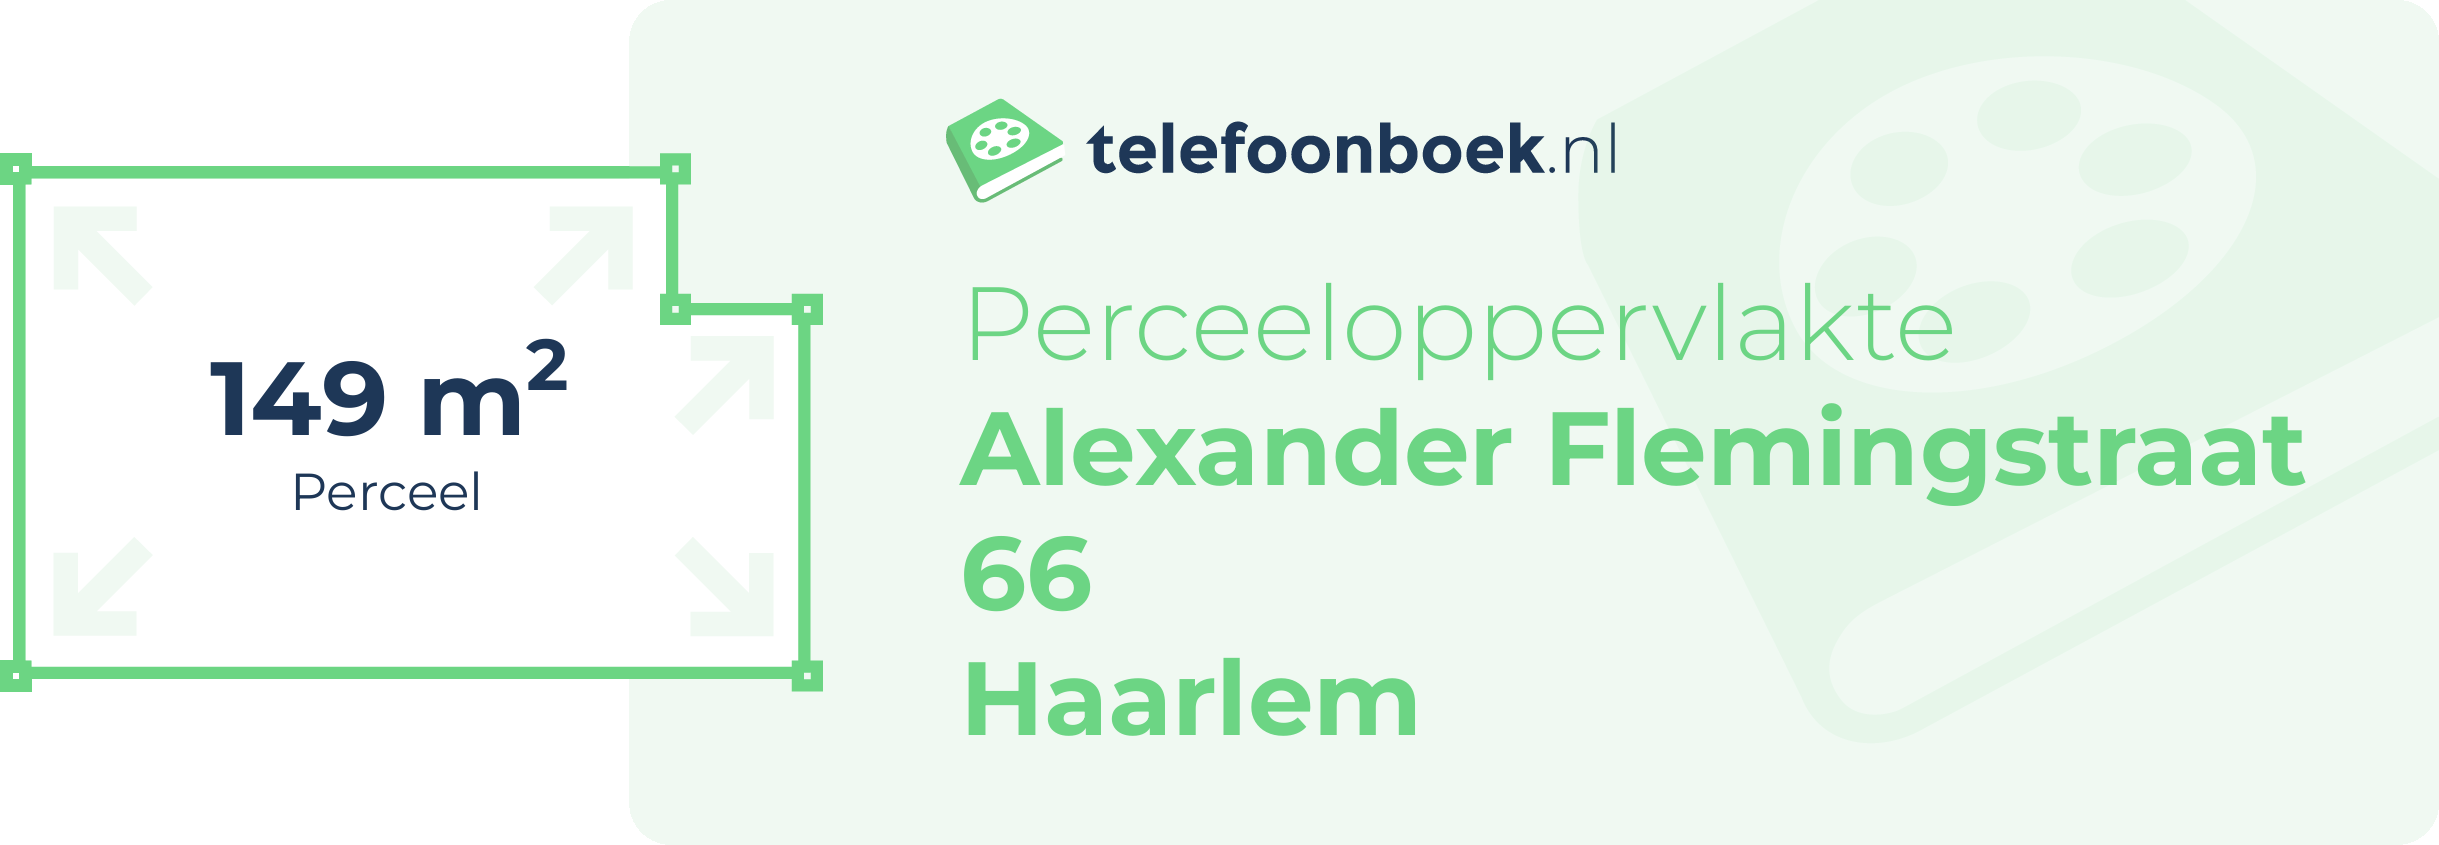 Perceeloppervlakte Alexander Flemingstraat 66 Haarlem